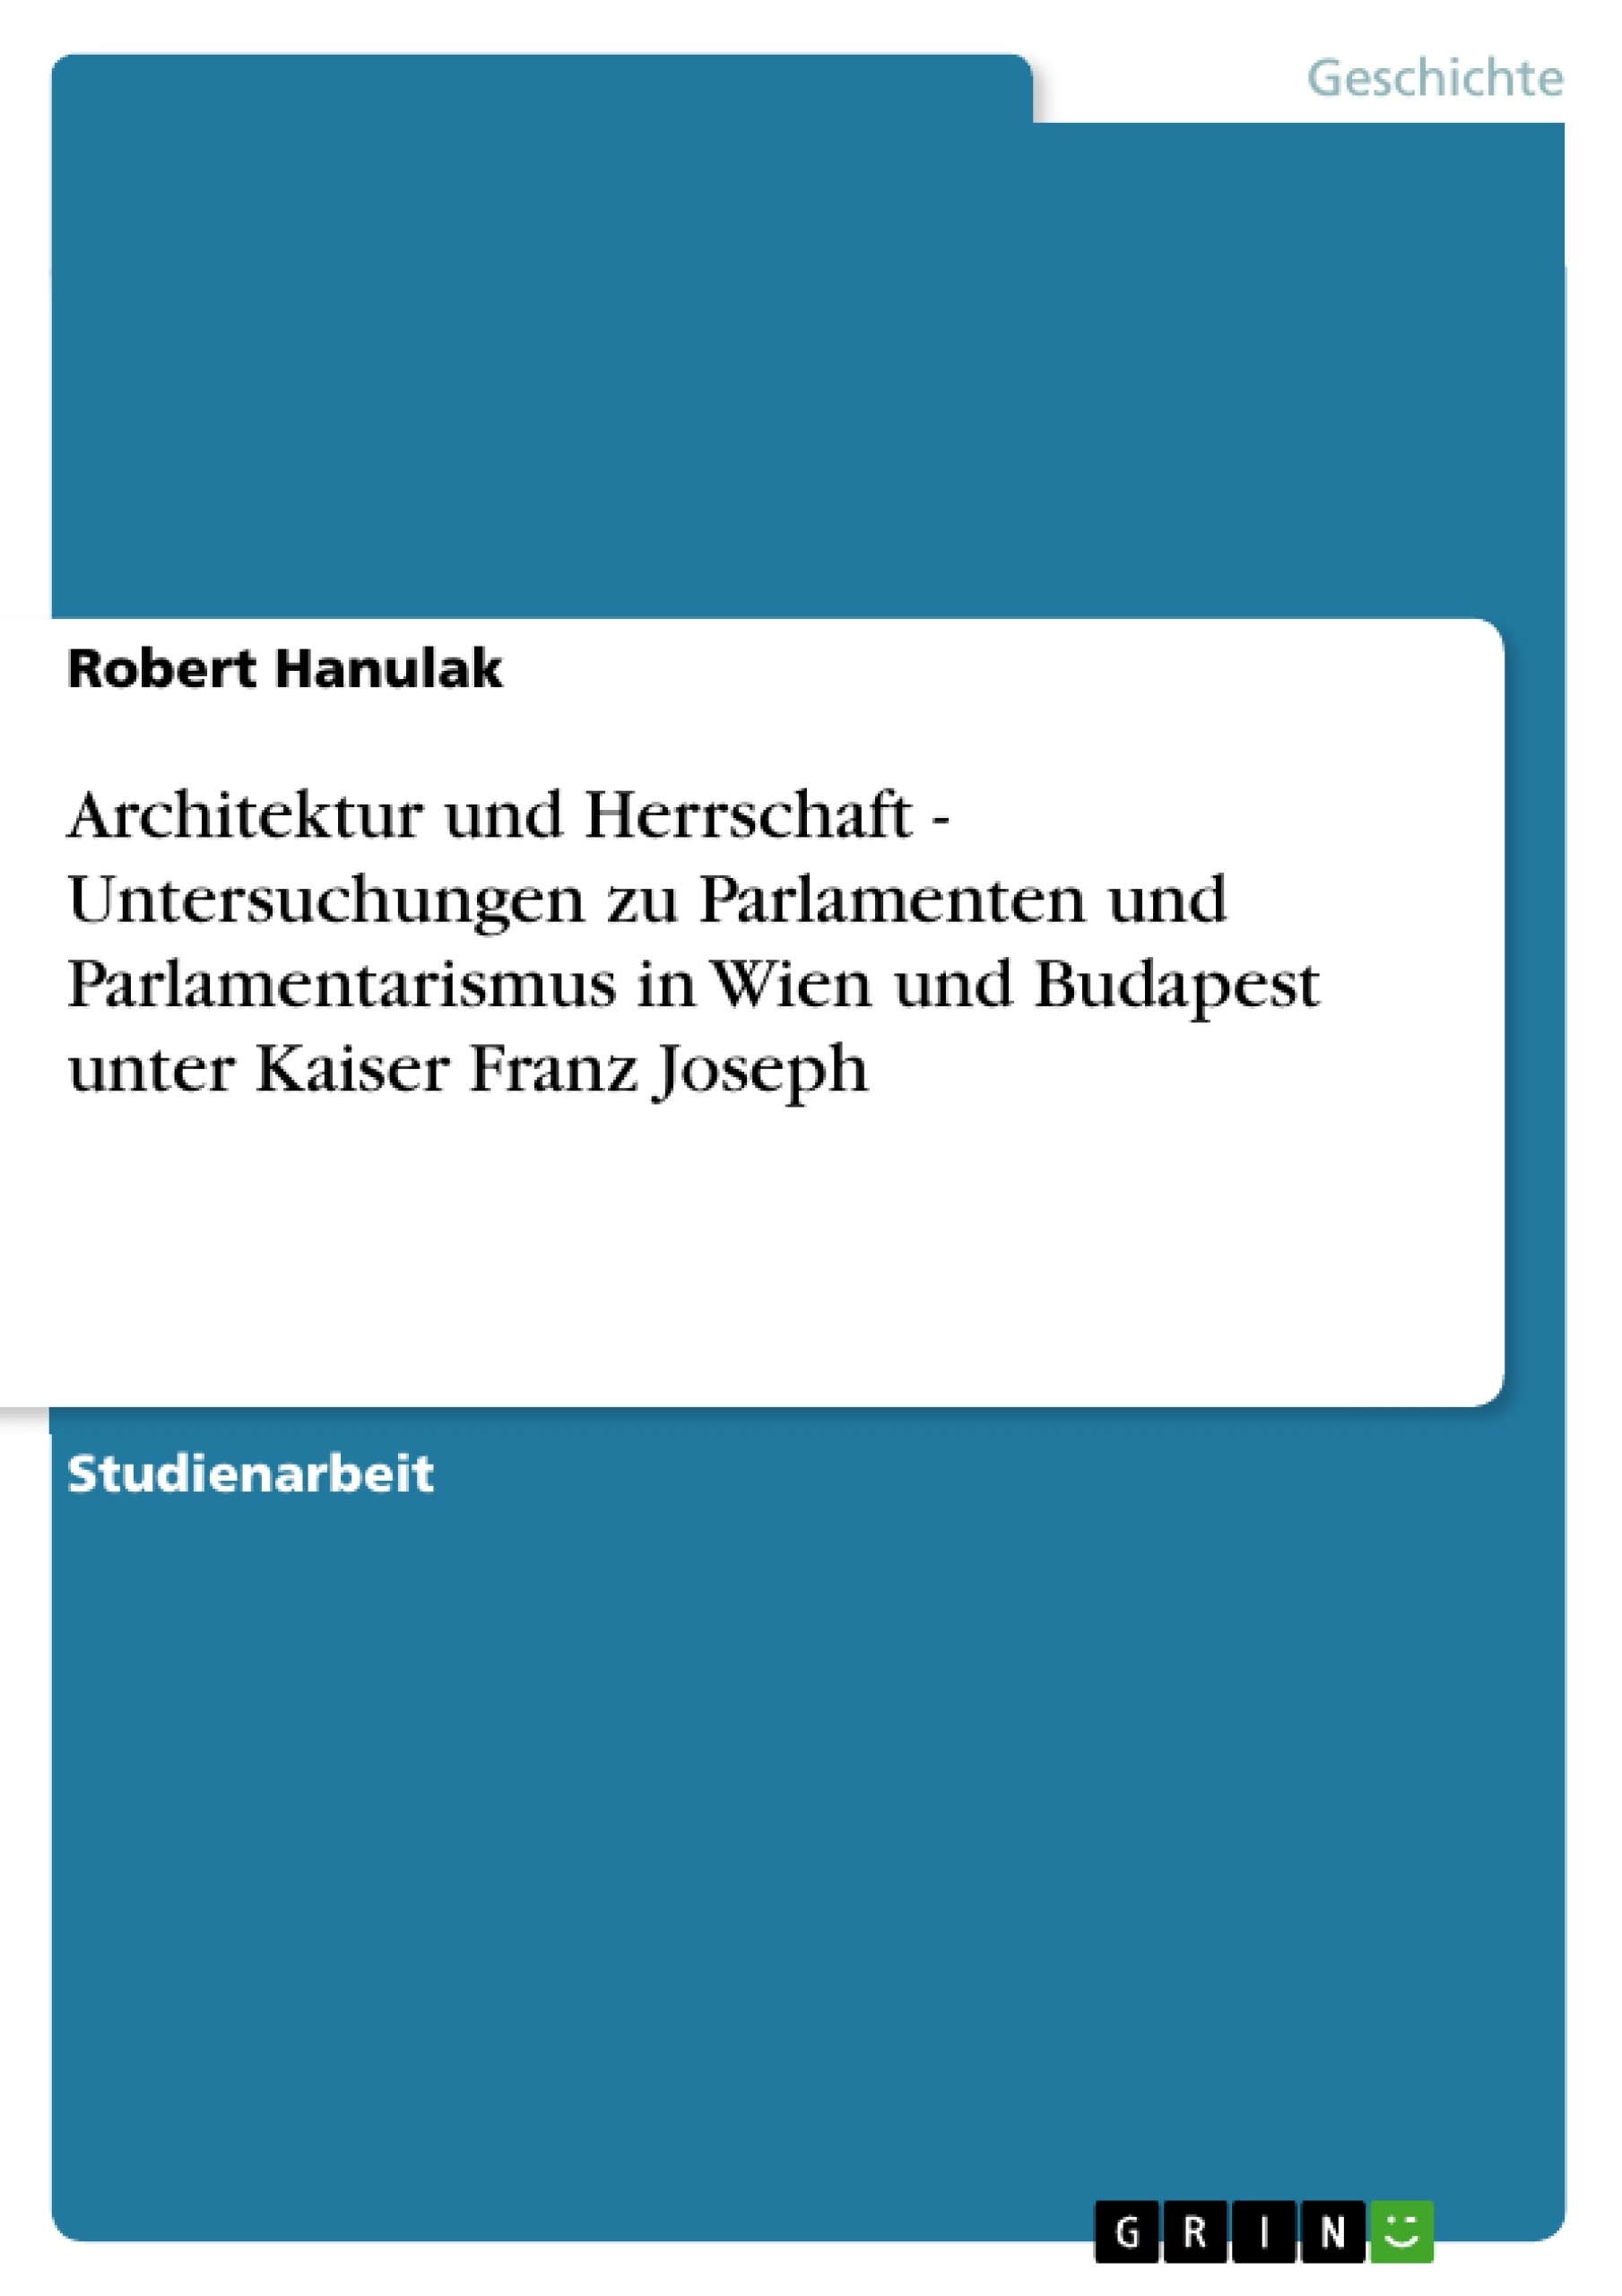 Titre: Architektur und Herrschaft - Untersuchungen zu Parlamenten und Parlamentarismus in Wien und Budapest unter Kaiser Franz Joseph